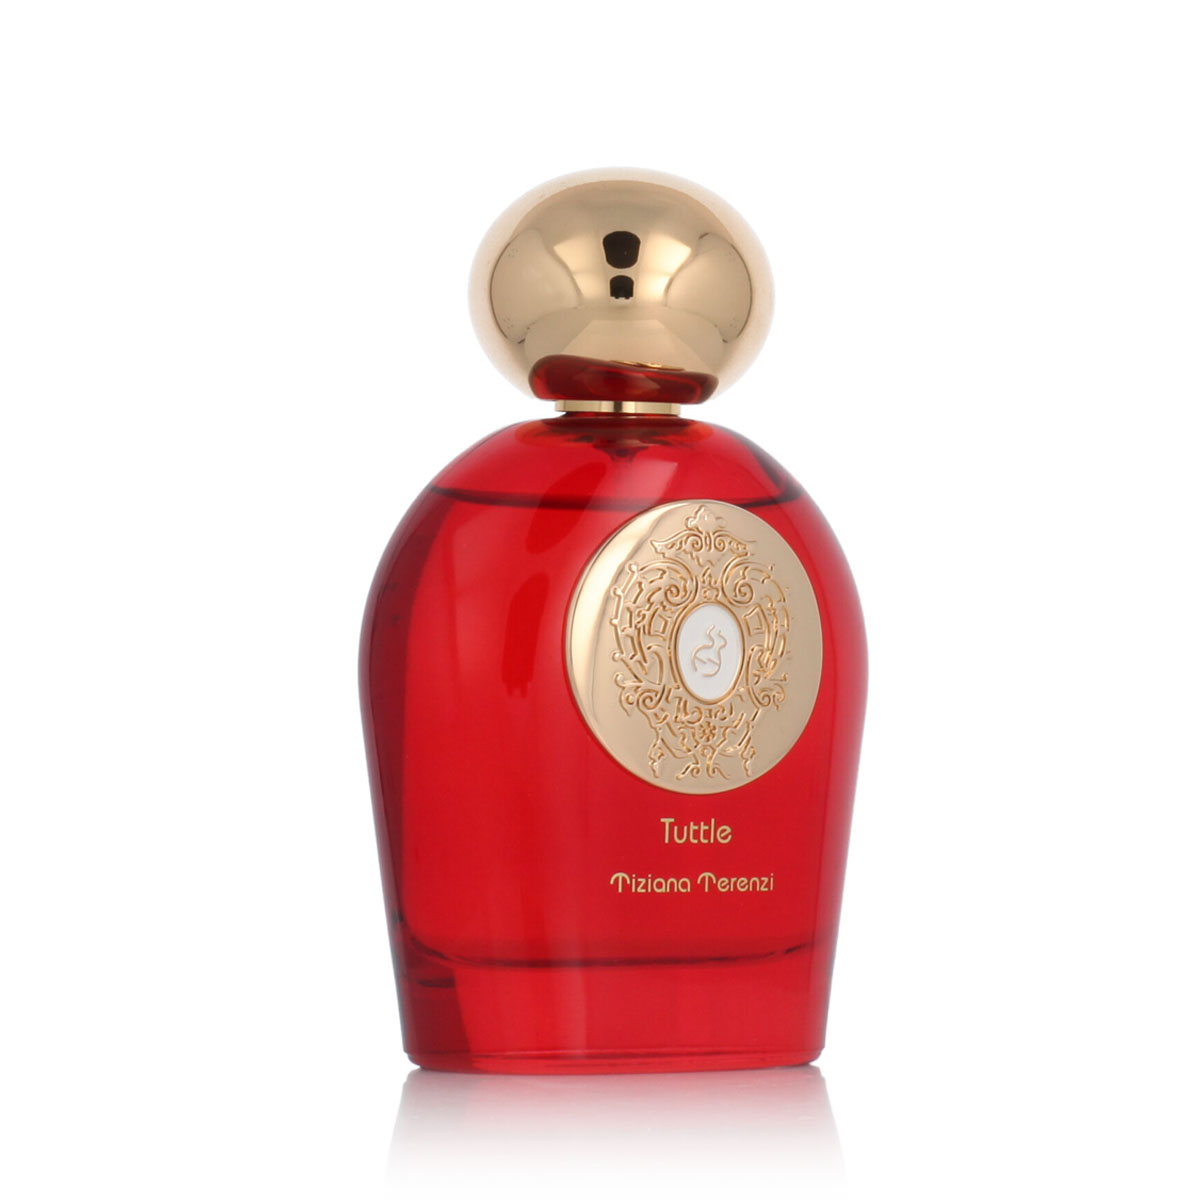 Tiziana Terenzi Tuttle 15 ml NIŠINIAI kvepalų mėginukas (atomaizeris) Unisex Parfum